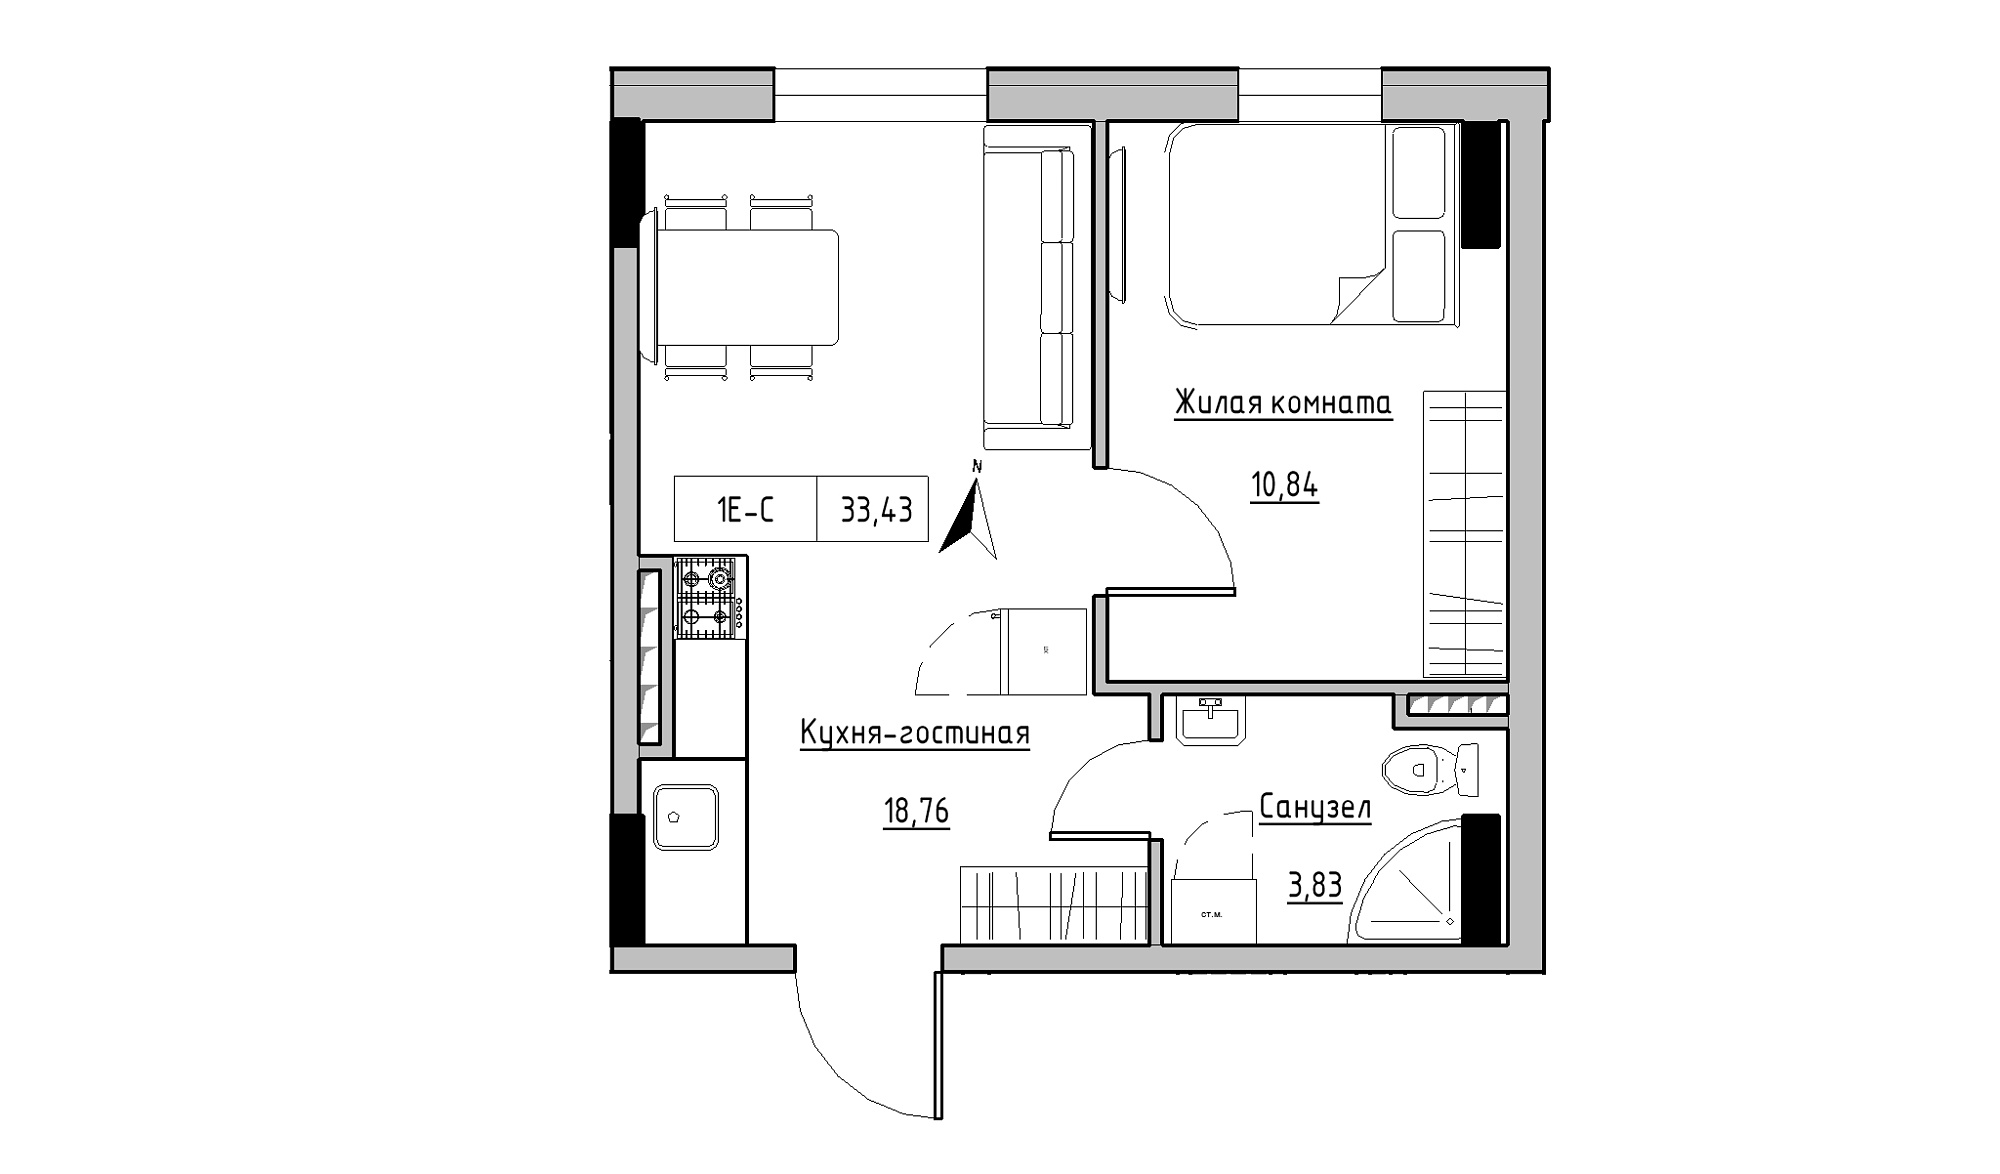 Планування 1-к квартира площею 33.43м2, KS-025-04/0010.